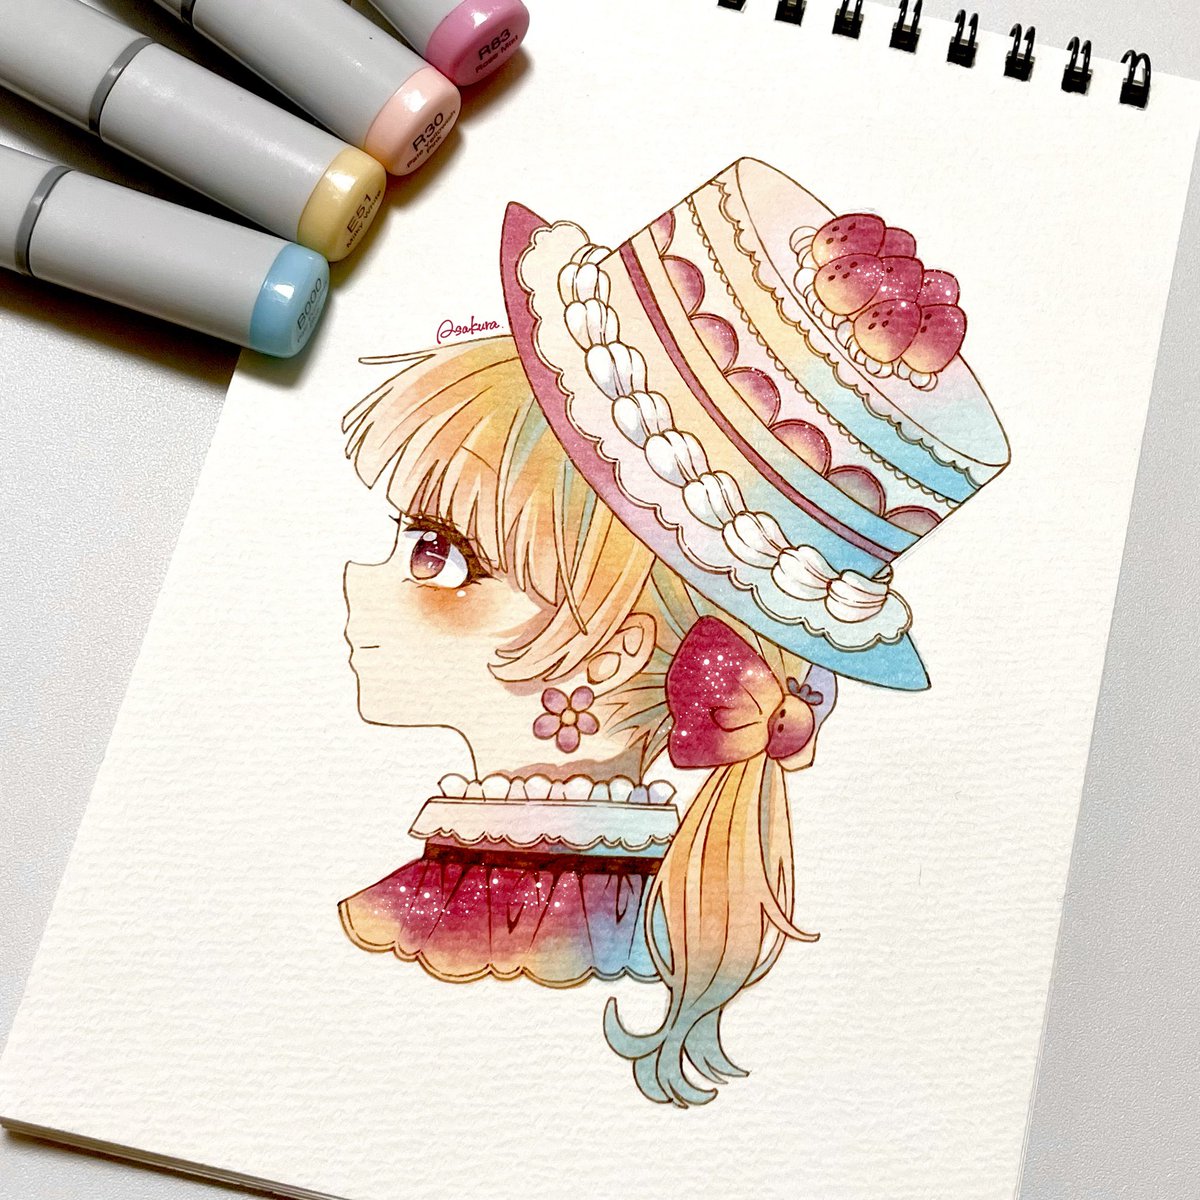 「ショートケーキになり隊」|朝倉のイラスト